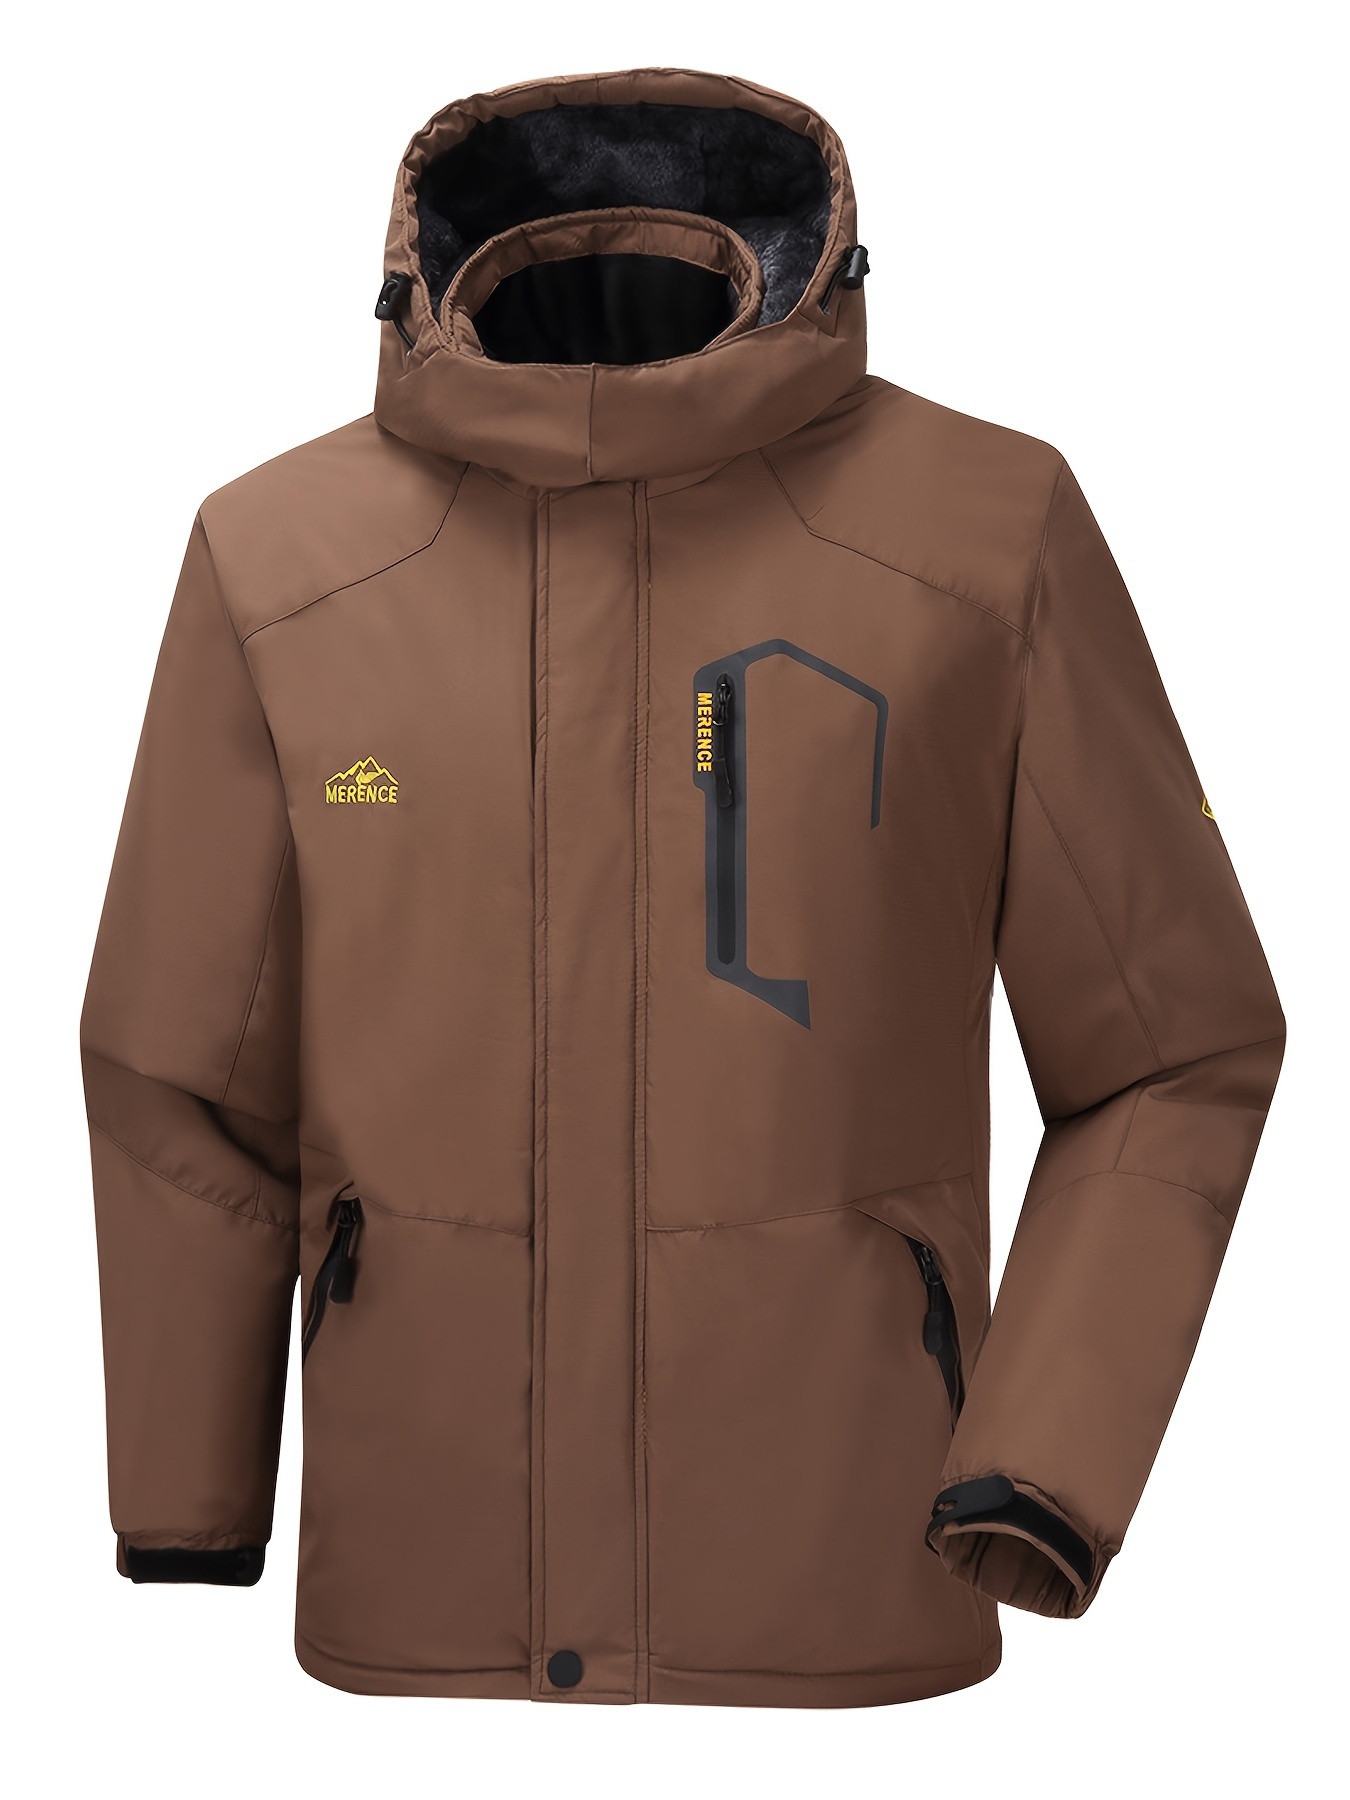 YODETEY Men'S Mountain Waterproof Ski Jacket Windproof Rain Jacket